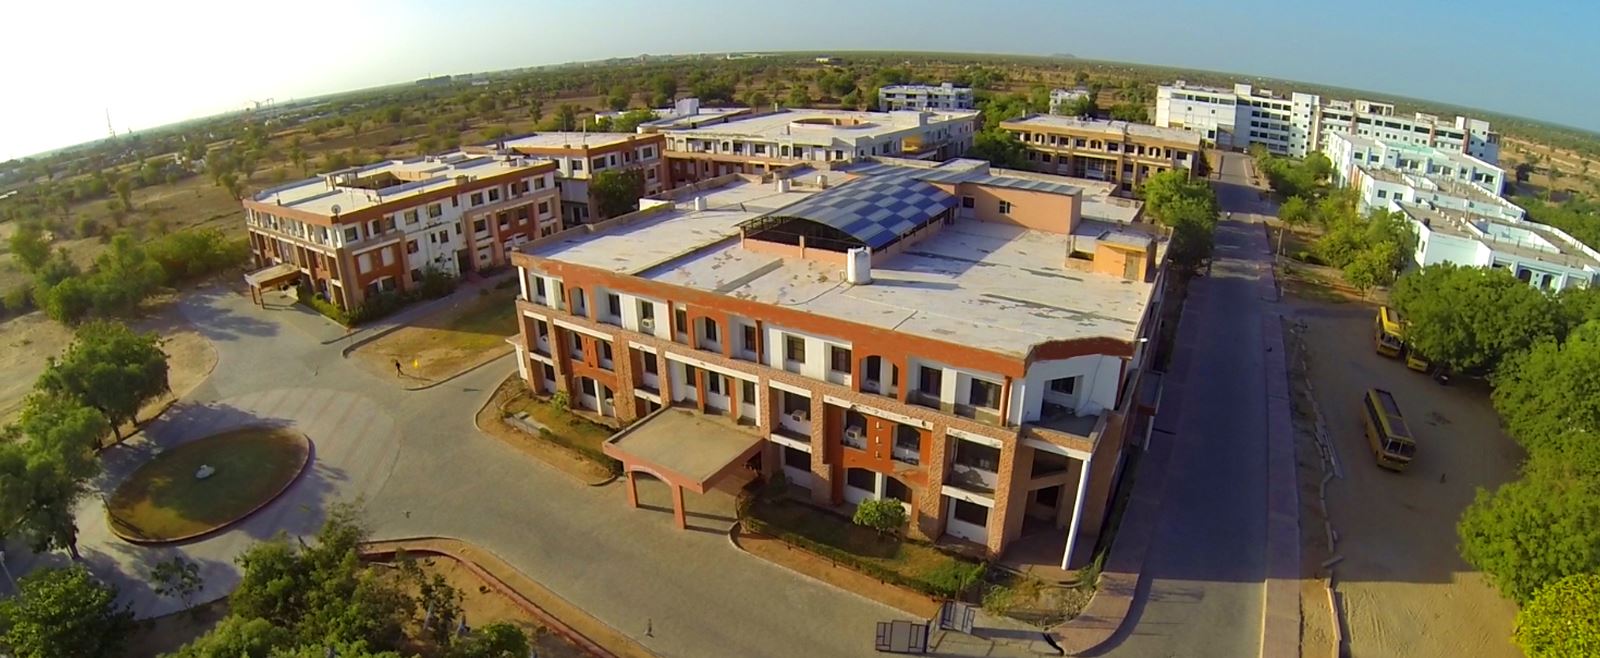 Jodhpur National University, Jodhpur (Rajasthan)